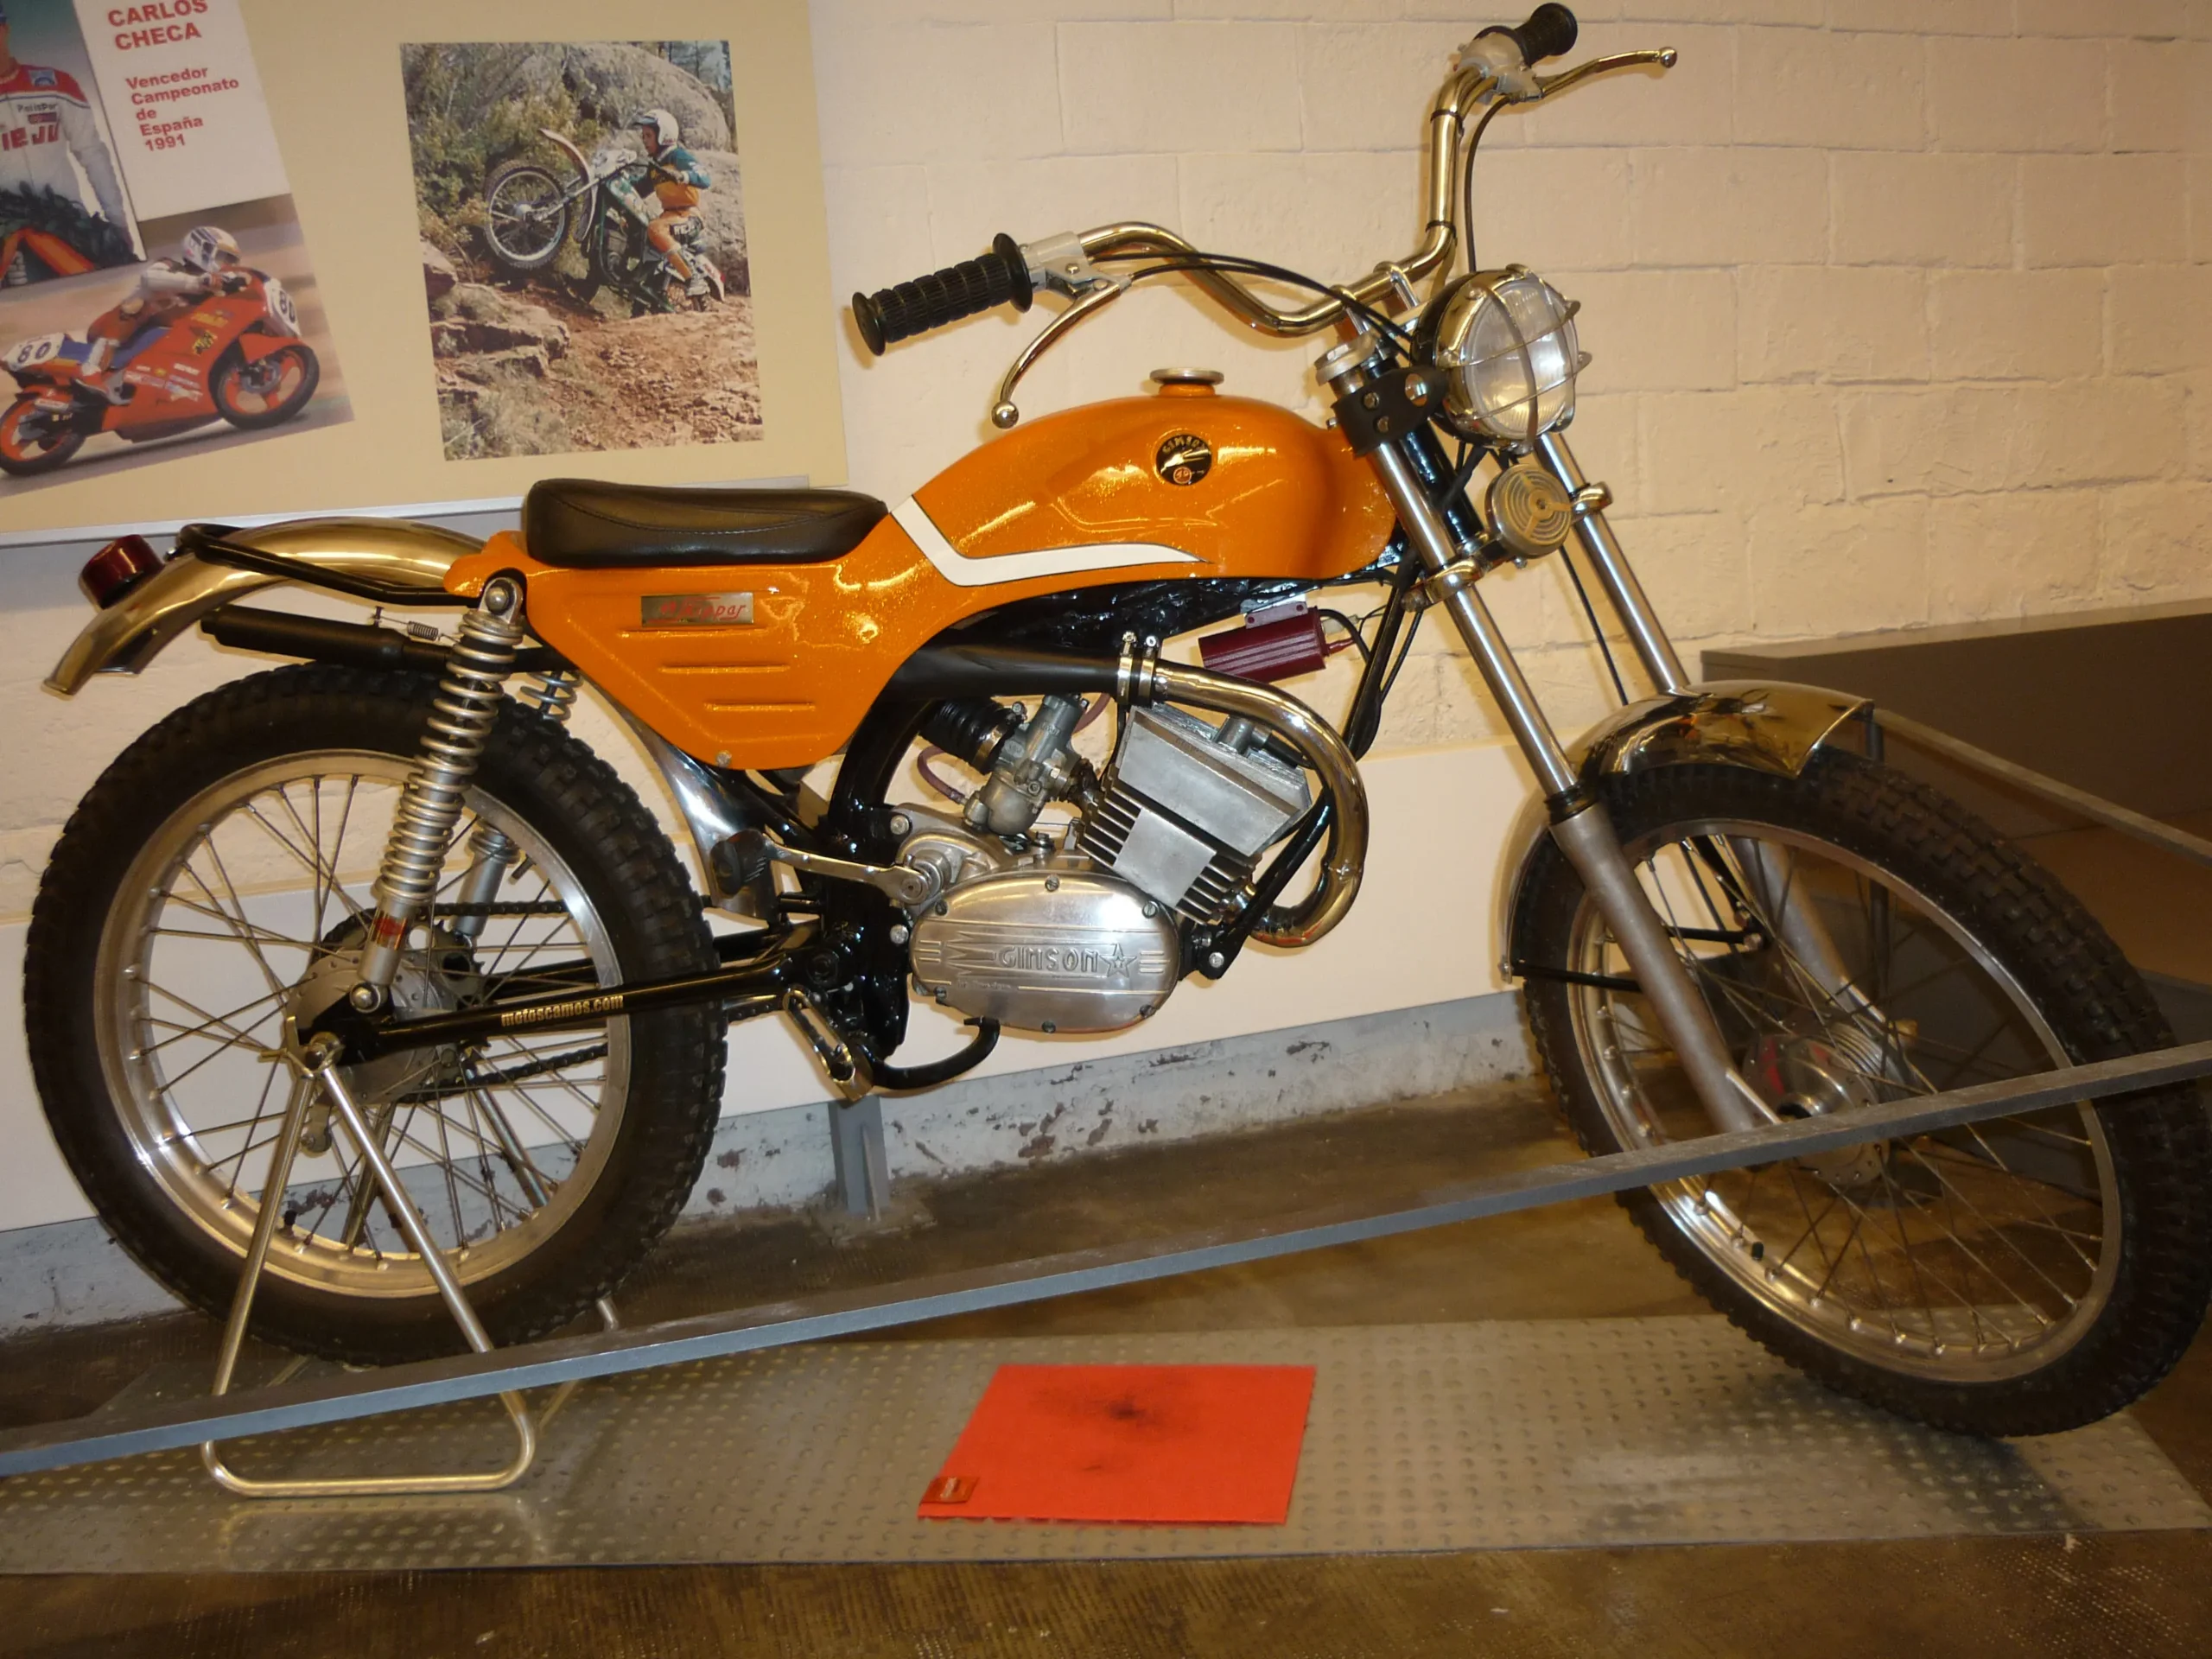 moto gimson antigua - Cuál fue la primera marca de motos del mundo